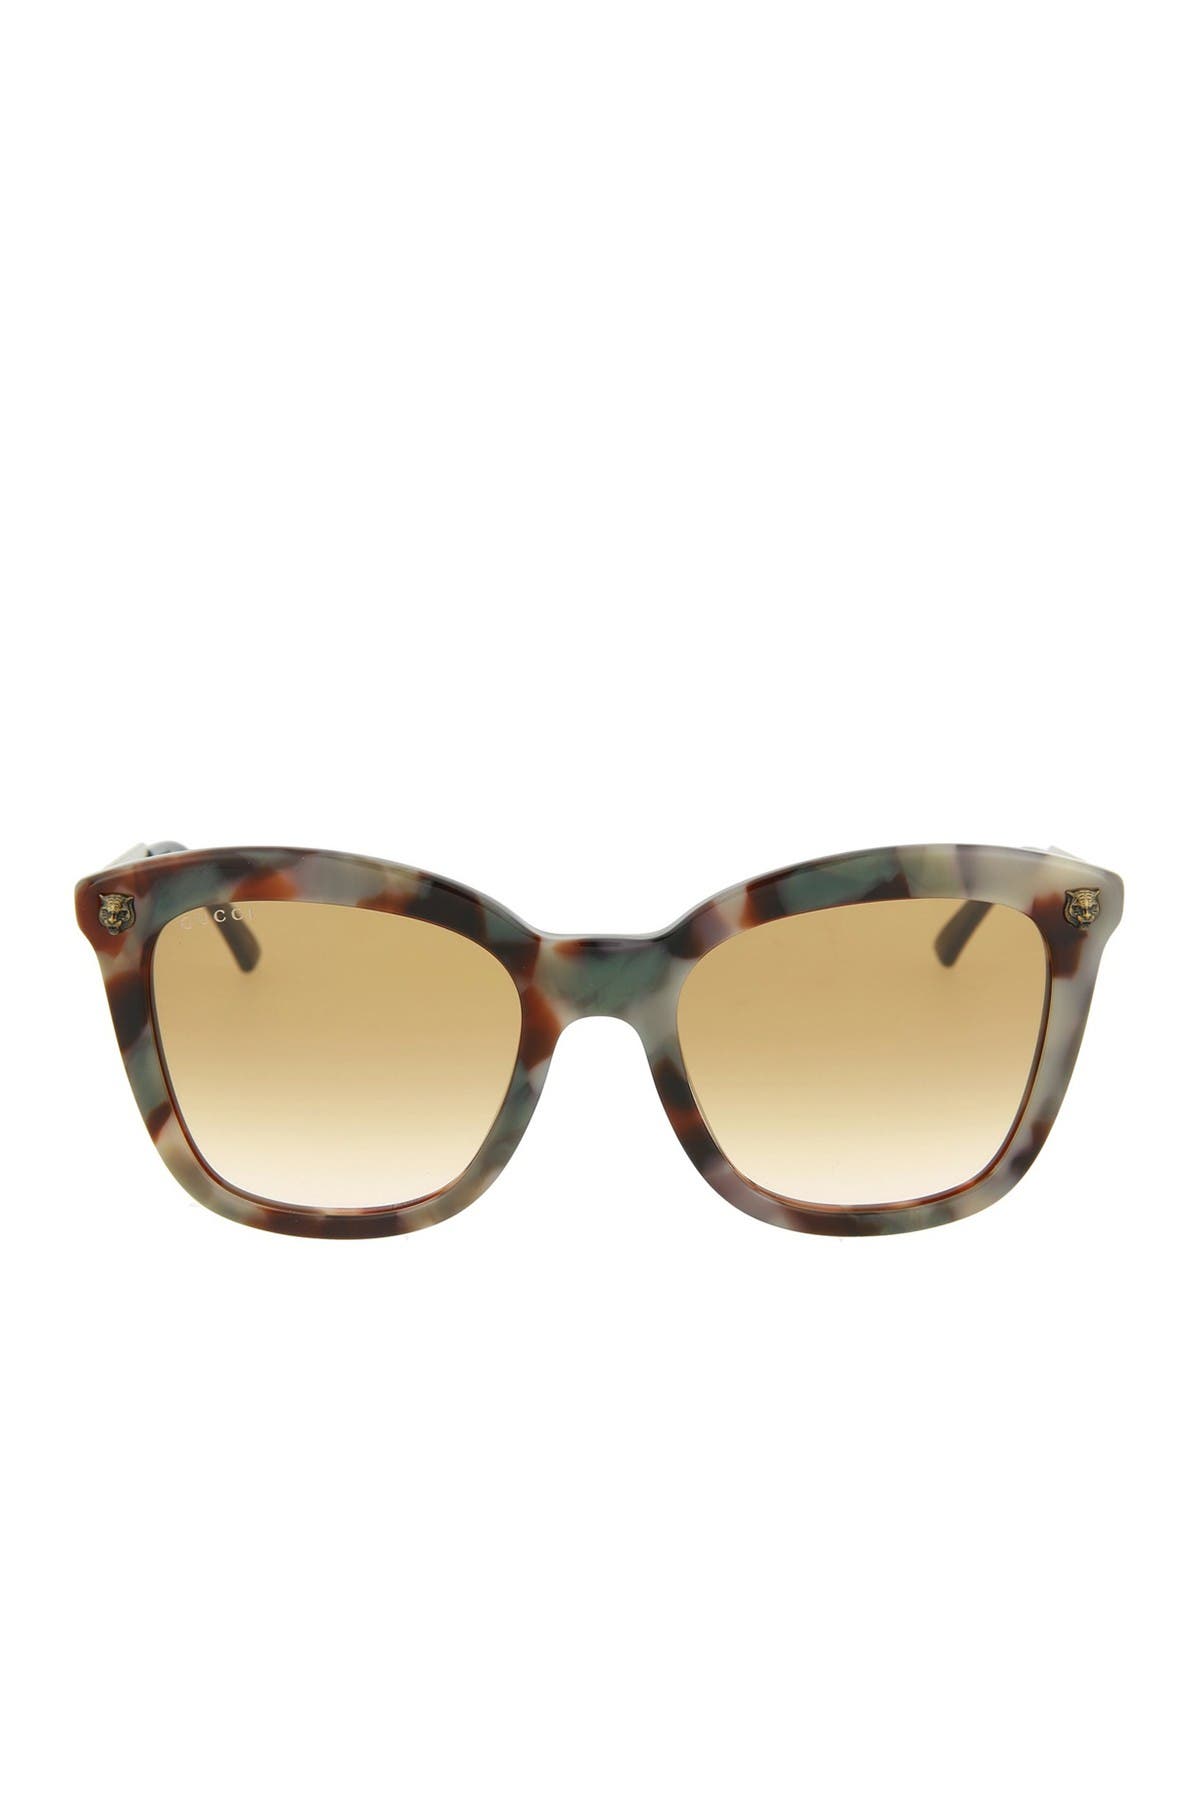 gucci 52mm cat eye sunglasses